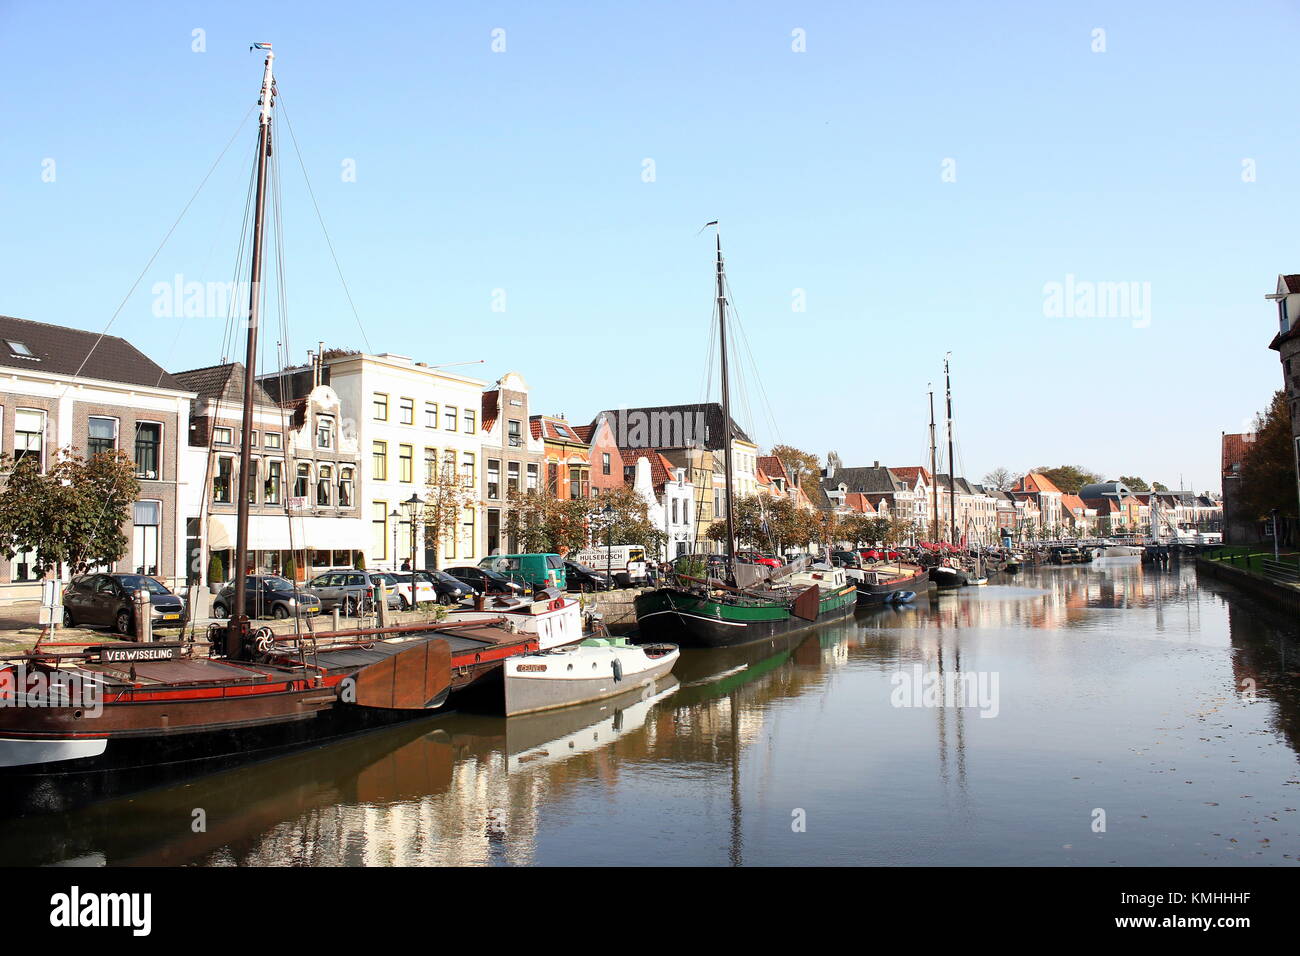 Historische Häuser und alten Segelschiffen im Zentrum von Zwolle günstig, in den Niederlanden bei Thorbeckegracht/Thorbecke canal Stockfoto